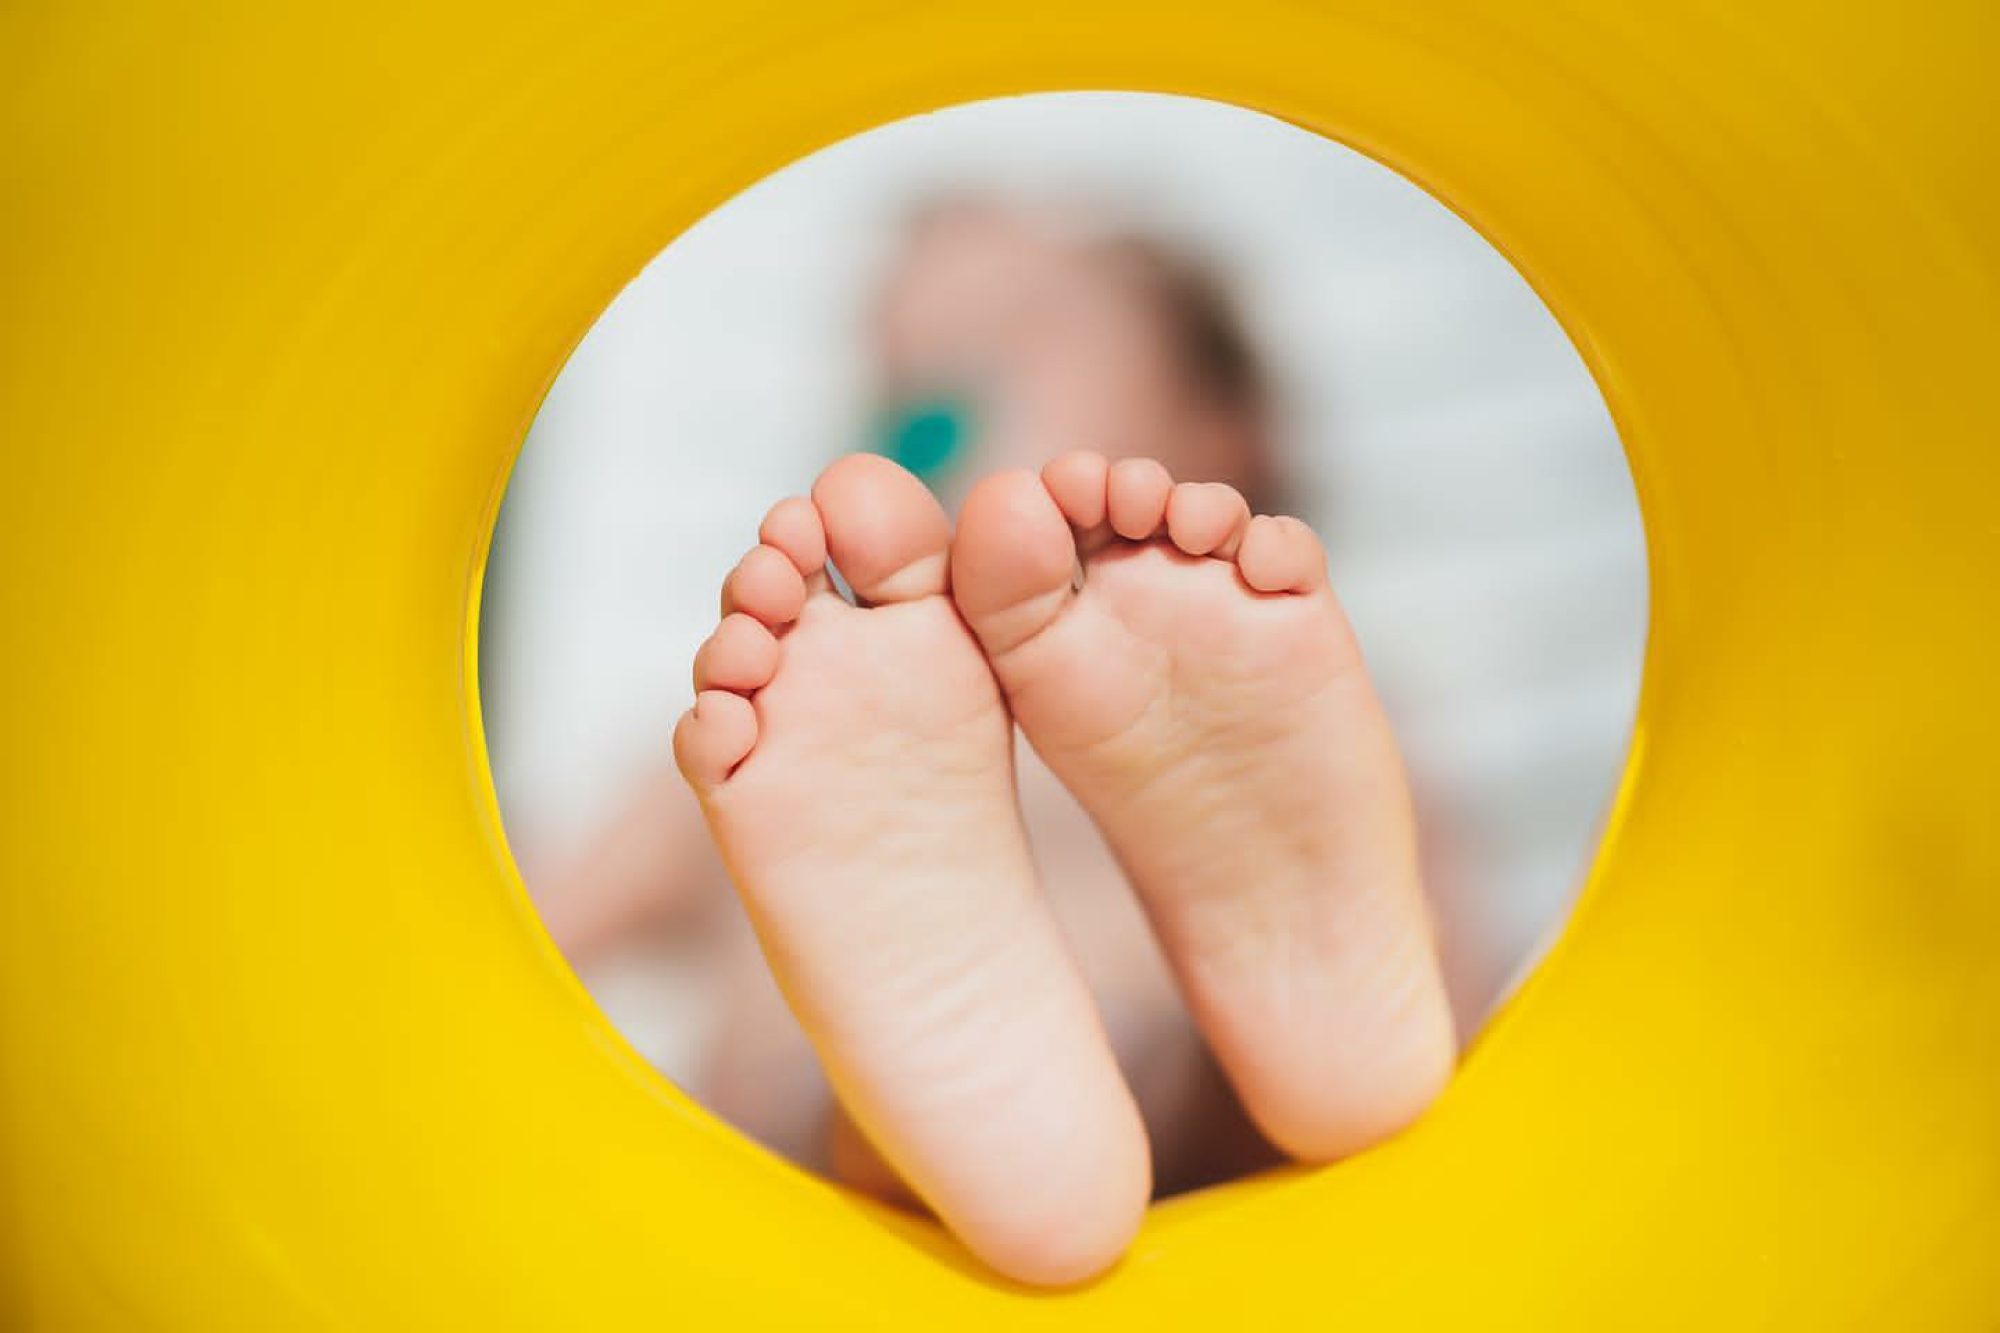 Dedos de los pies COVID: Lo que hay que saber sobre este extraño síntoma en los niños